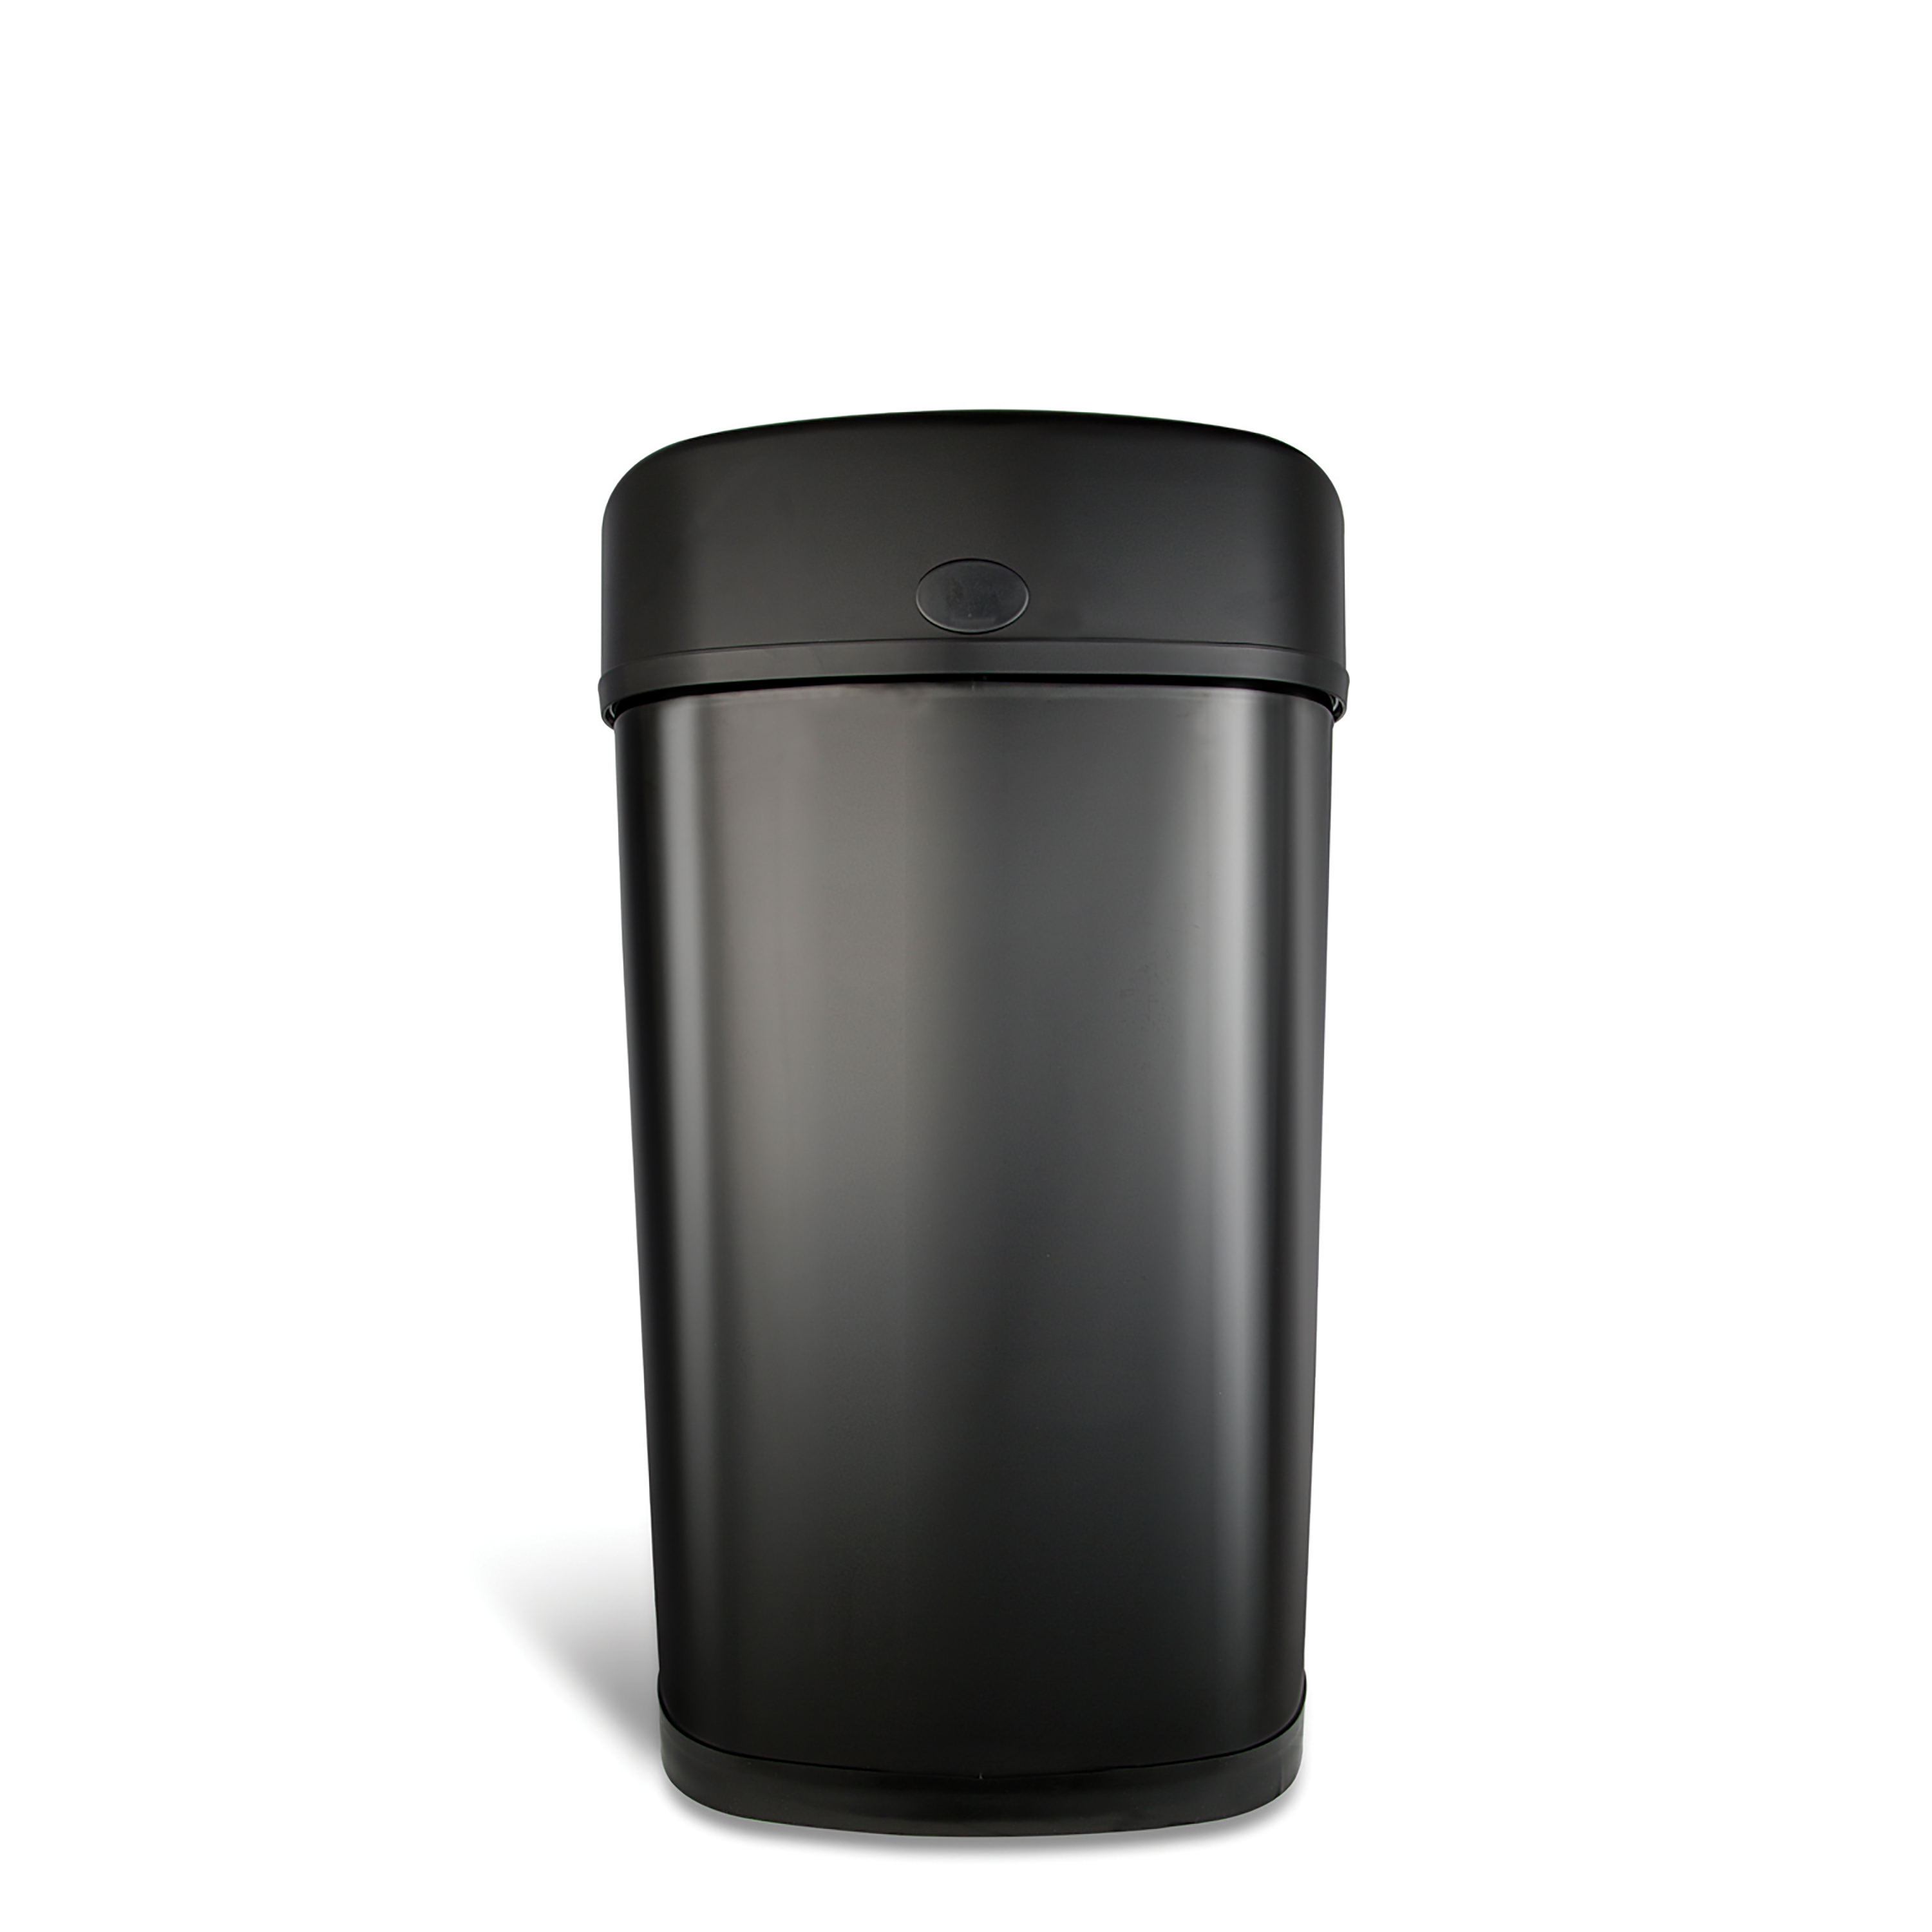 Nine Stars Motion Sensor Oval Kitchen Garbage Can, Fingerprint-Resistant Stainless Steel, 13.2 gal, Matte Black - image 9 of 9